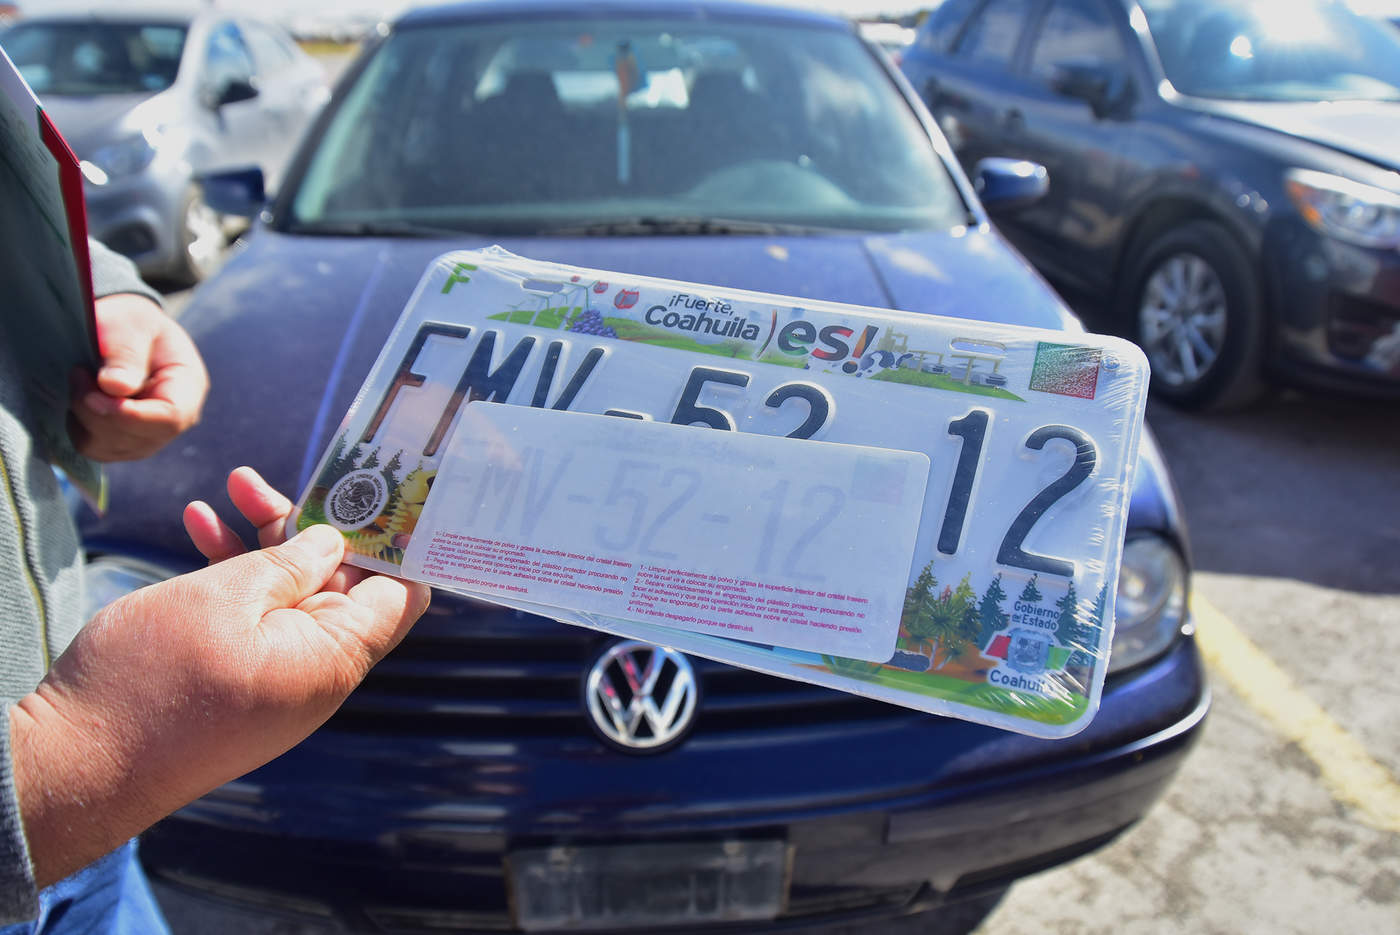 Se tramitan y entregan las nuevas placas de circulación de Coahuila para quienes realizaron el pago en forma anticipada de las láminas el pasado mes de diciembre. (ERNESTO RAMÍREZ)